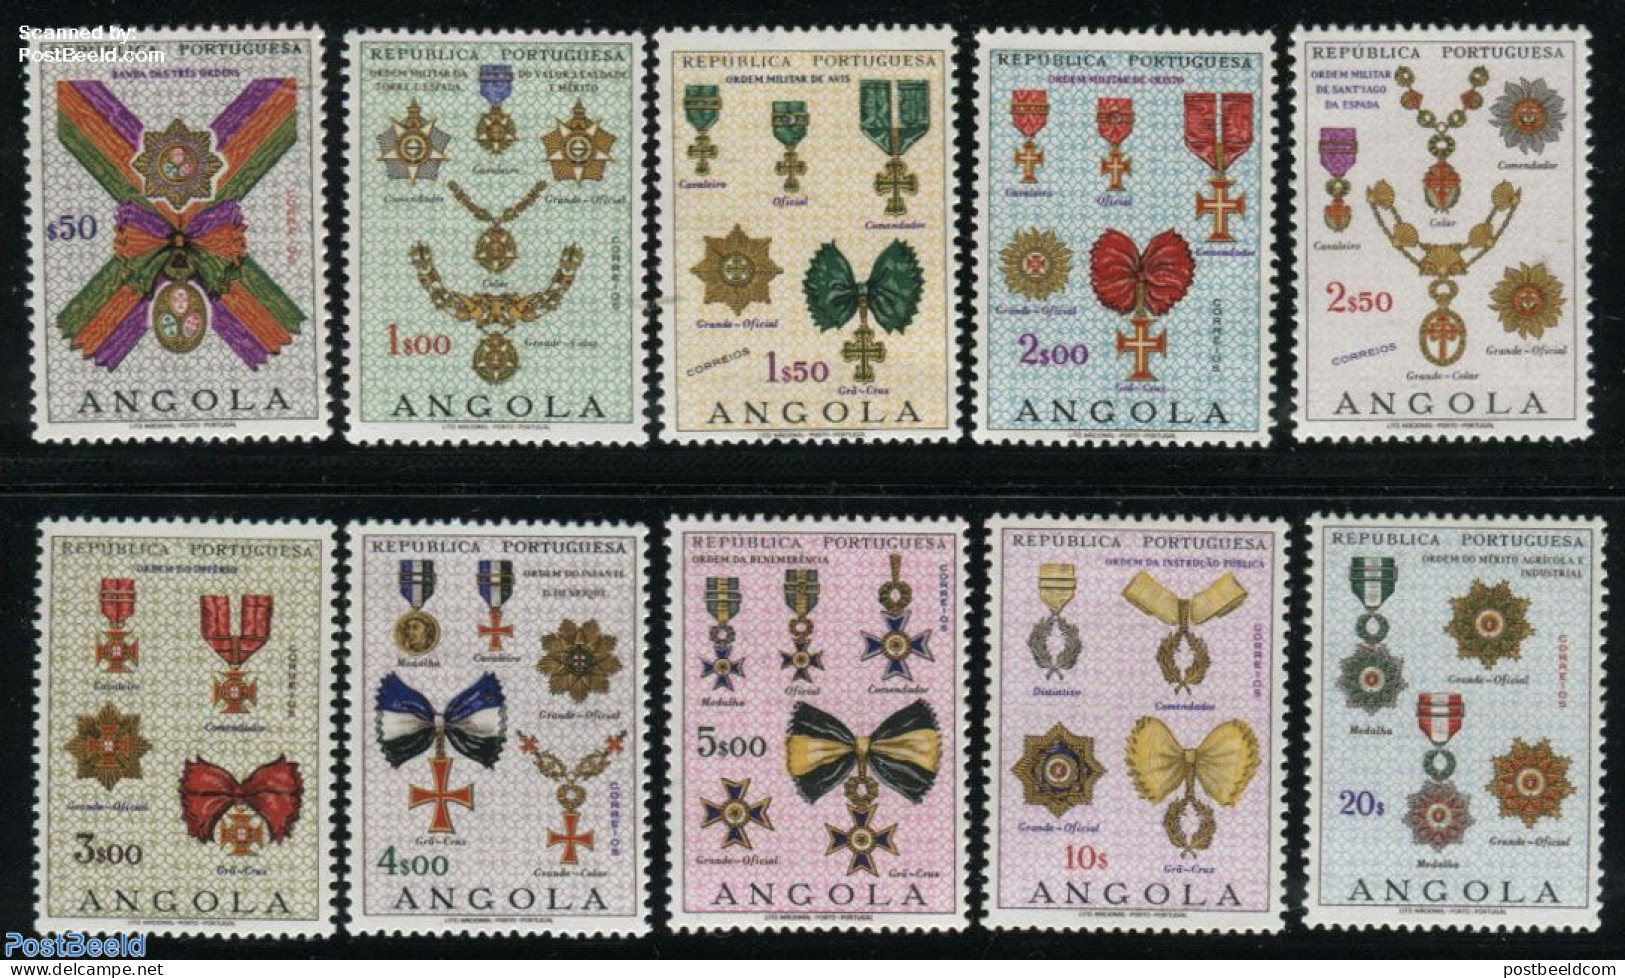 Angola 1967 Decorations 10v, Mint NH, History - Decorations - Militaria